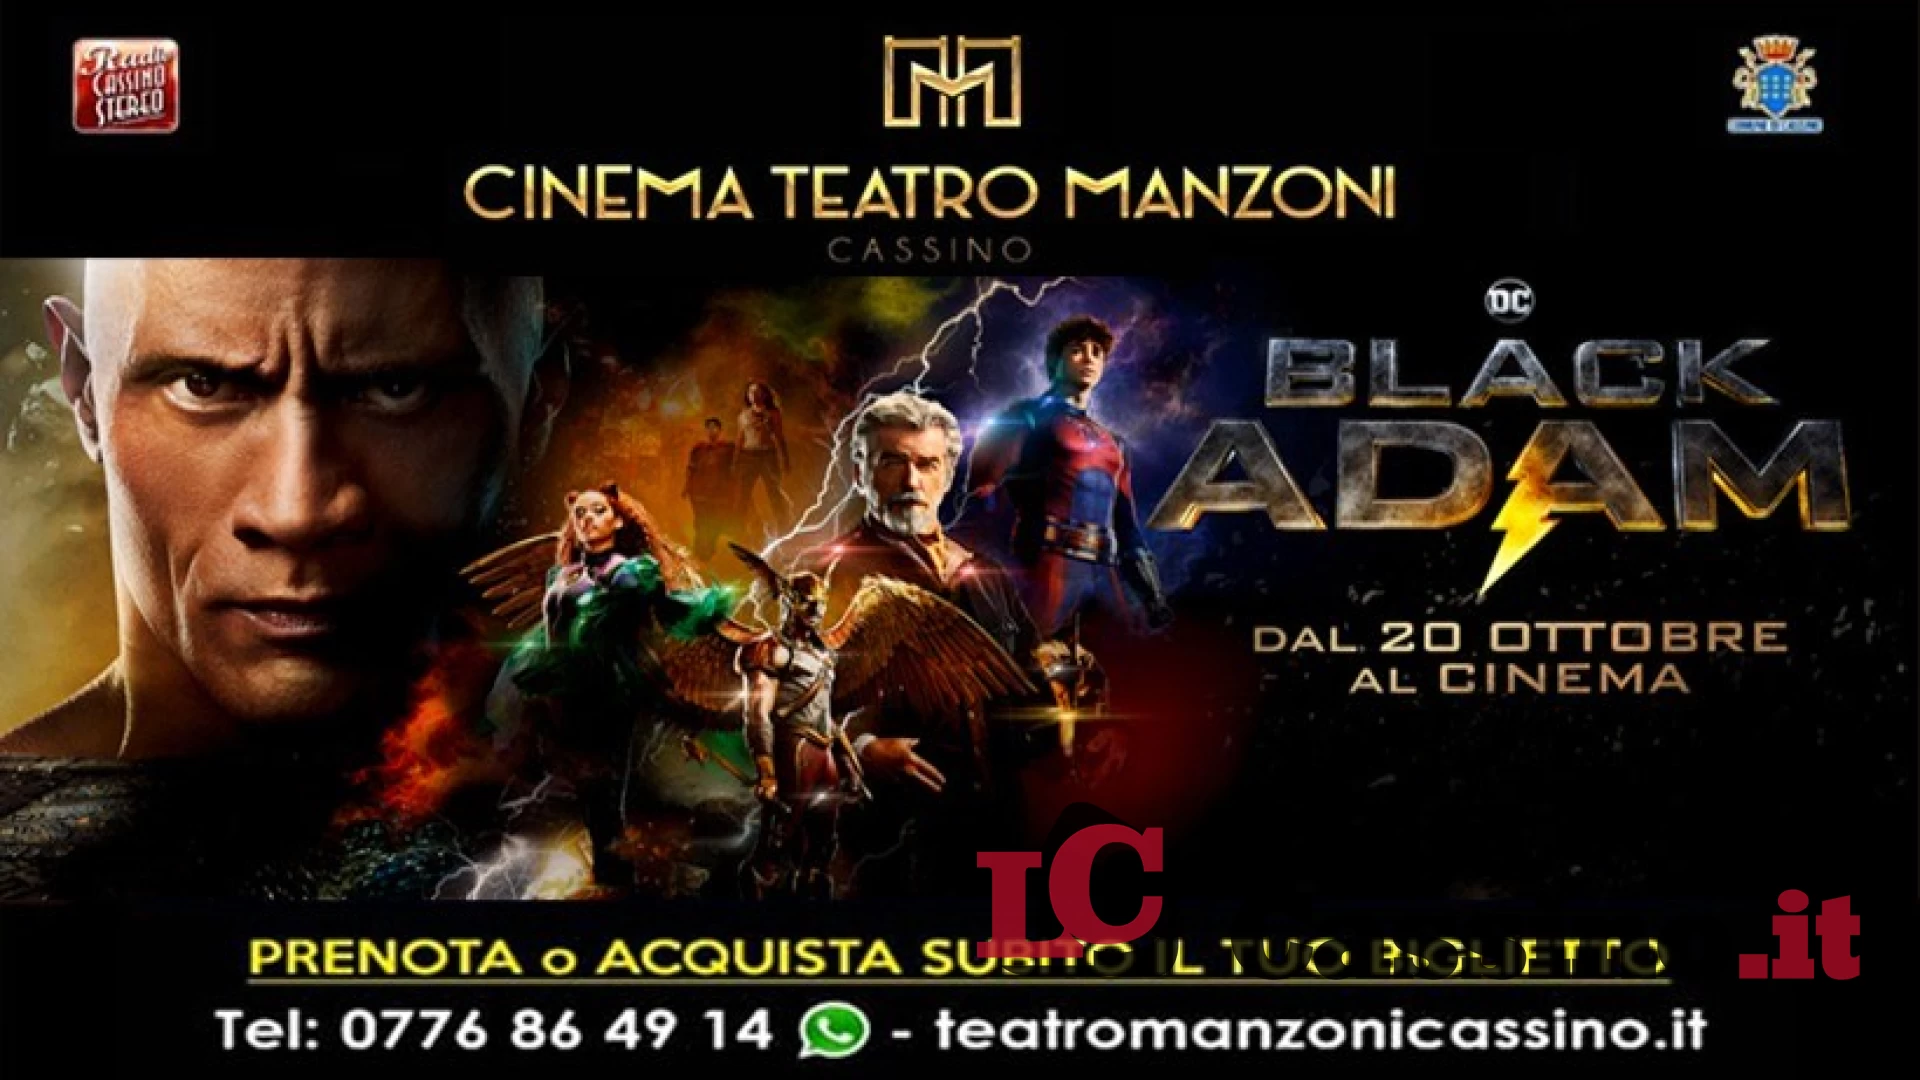 Cinema Teatro Manzoni Cassino: adrenalina e divertimento, in programmazione c’è Black Adam